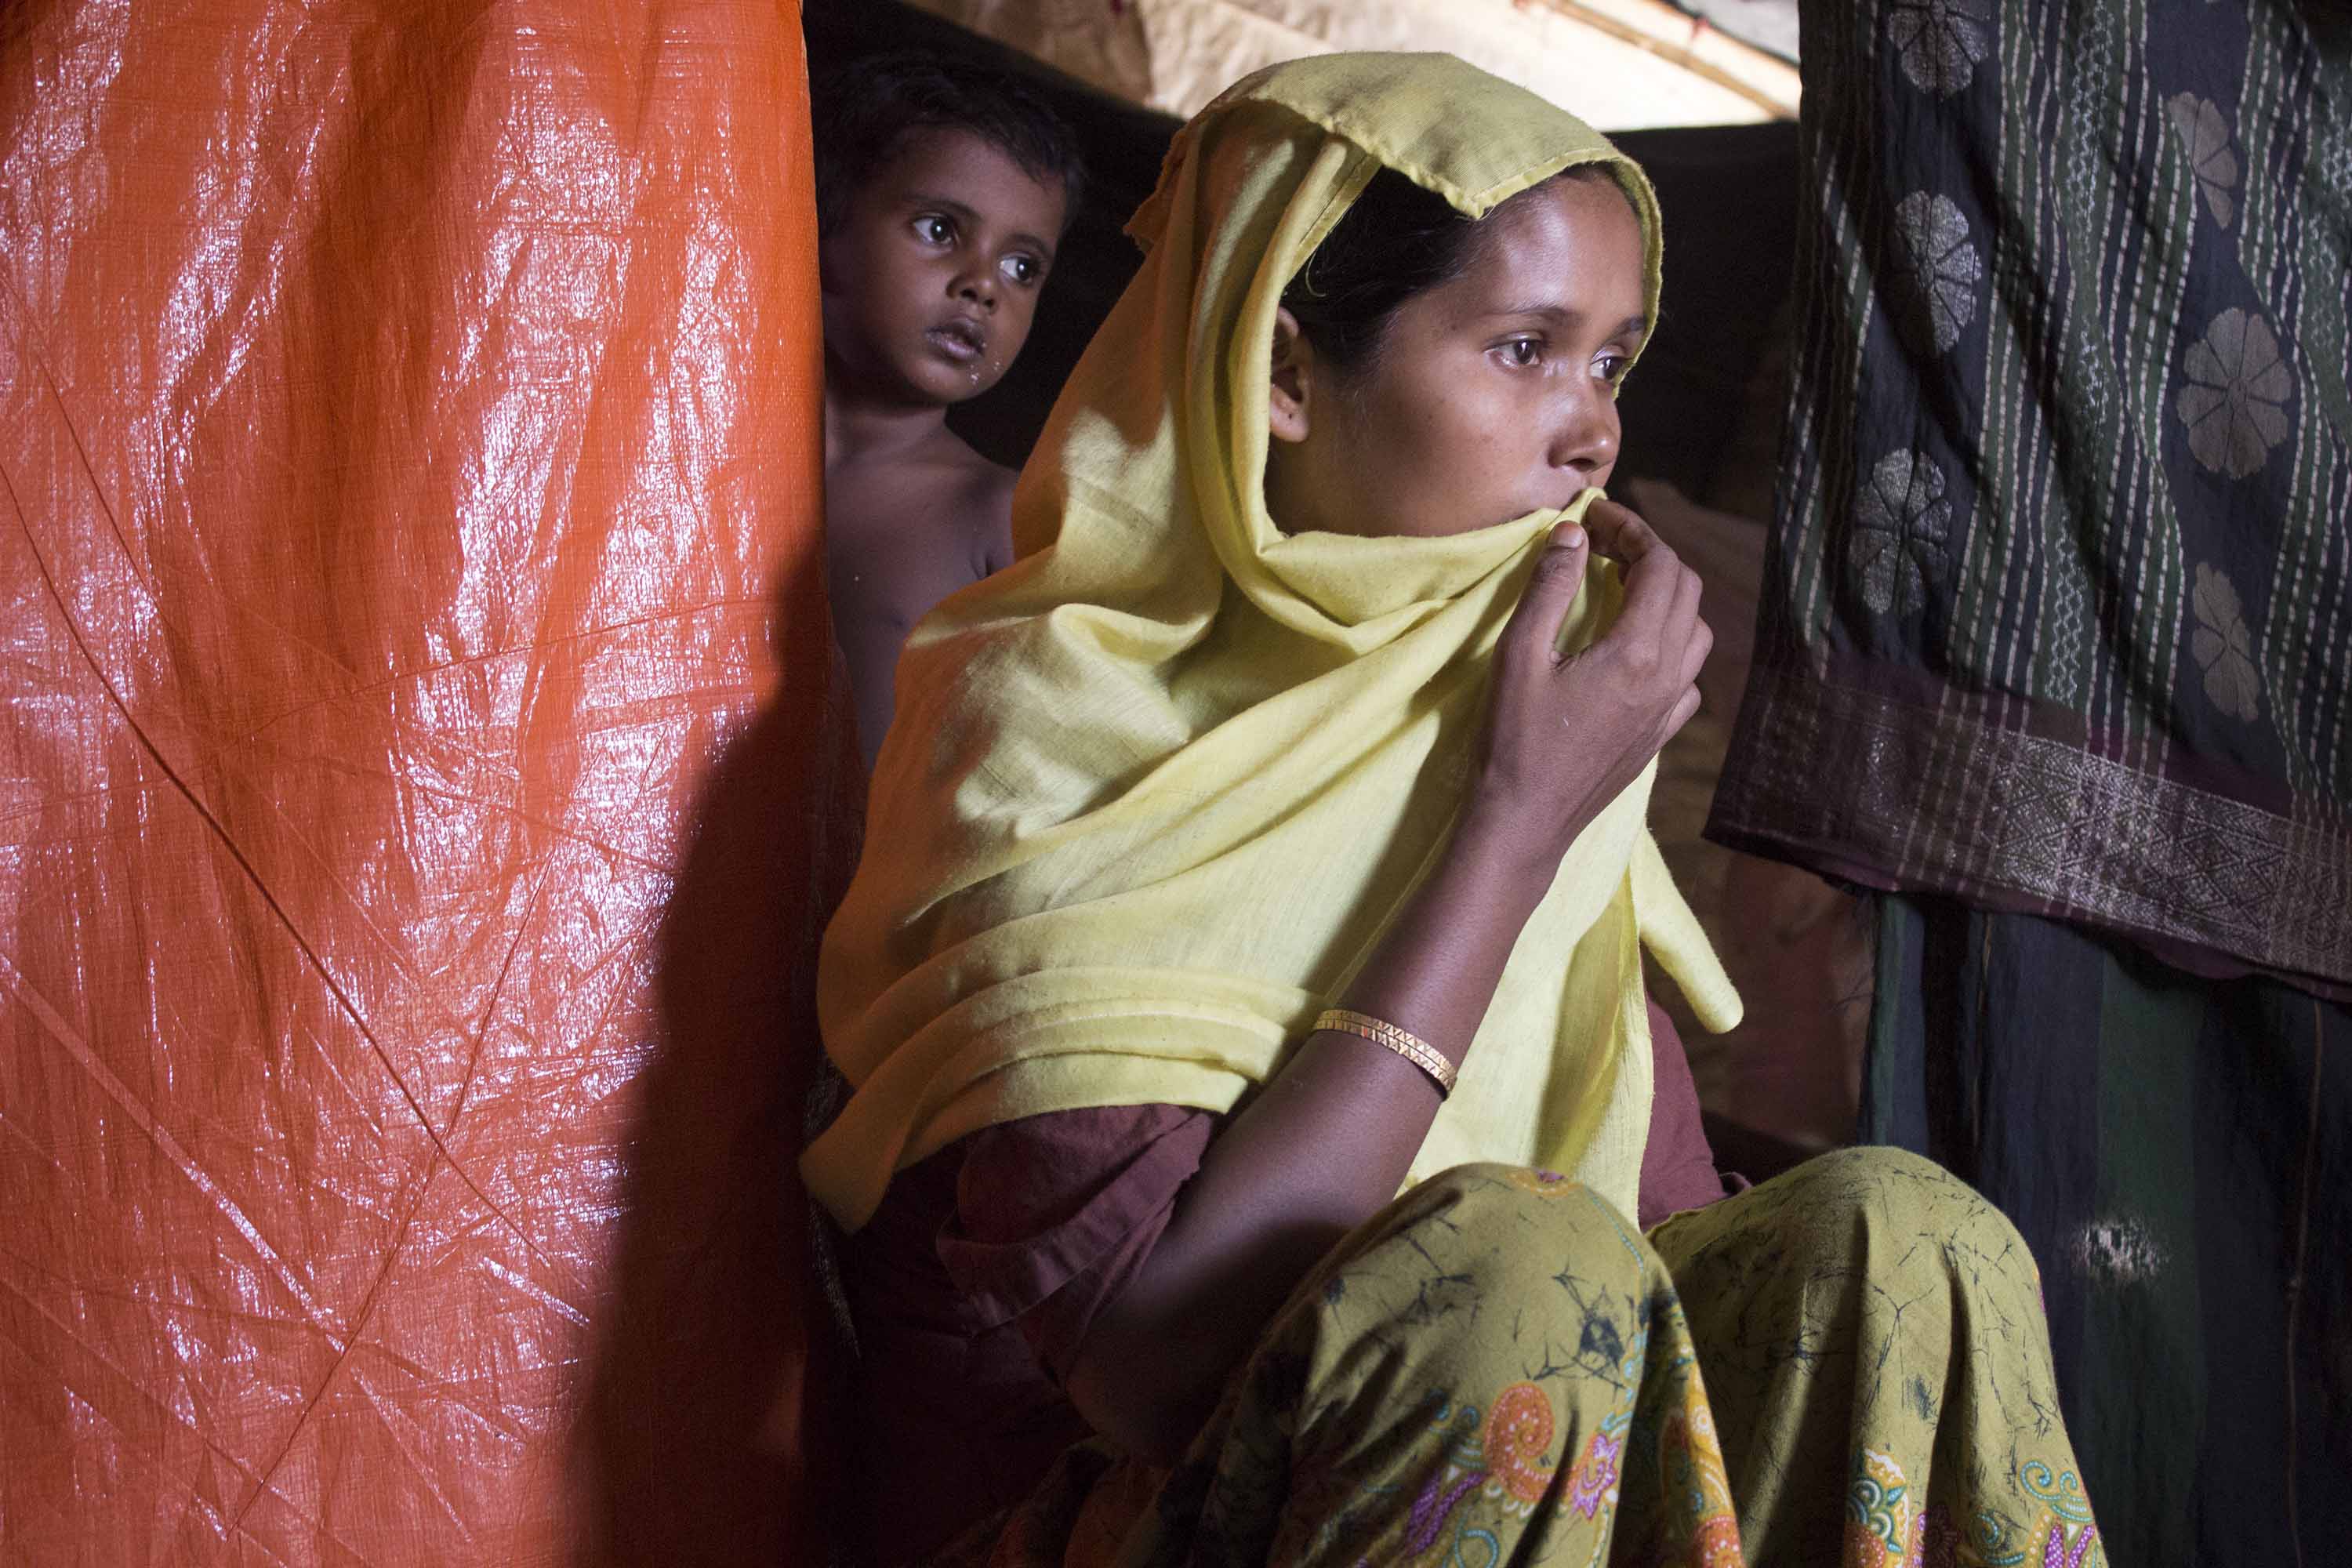 Mini Skirt Teens Ass Rape - Rape as weapon of war on Rohingya women | CNN